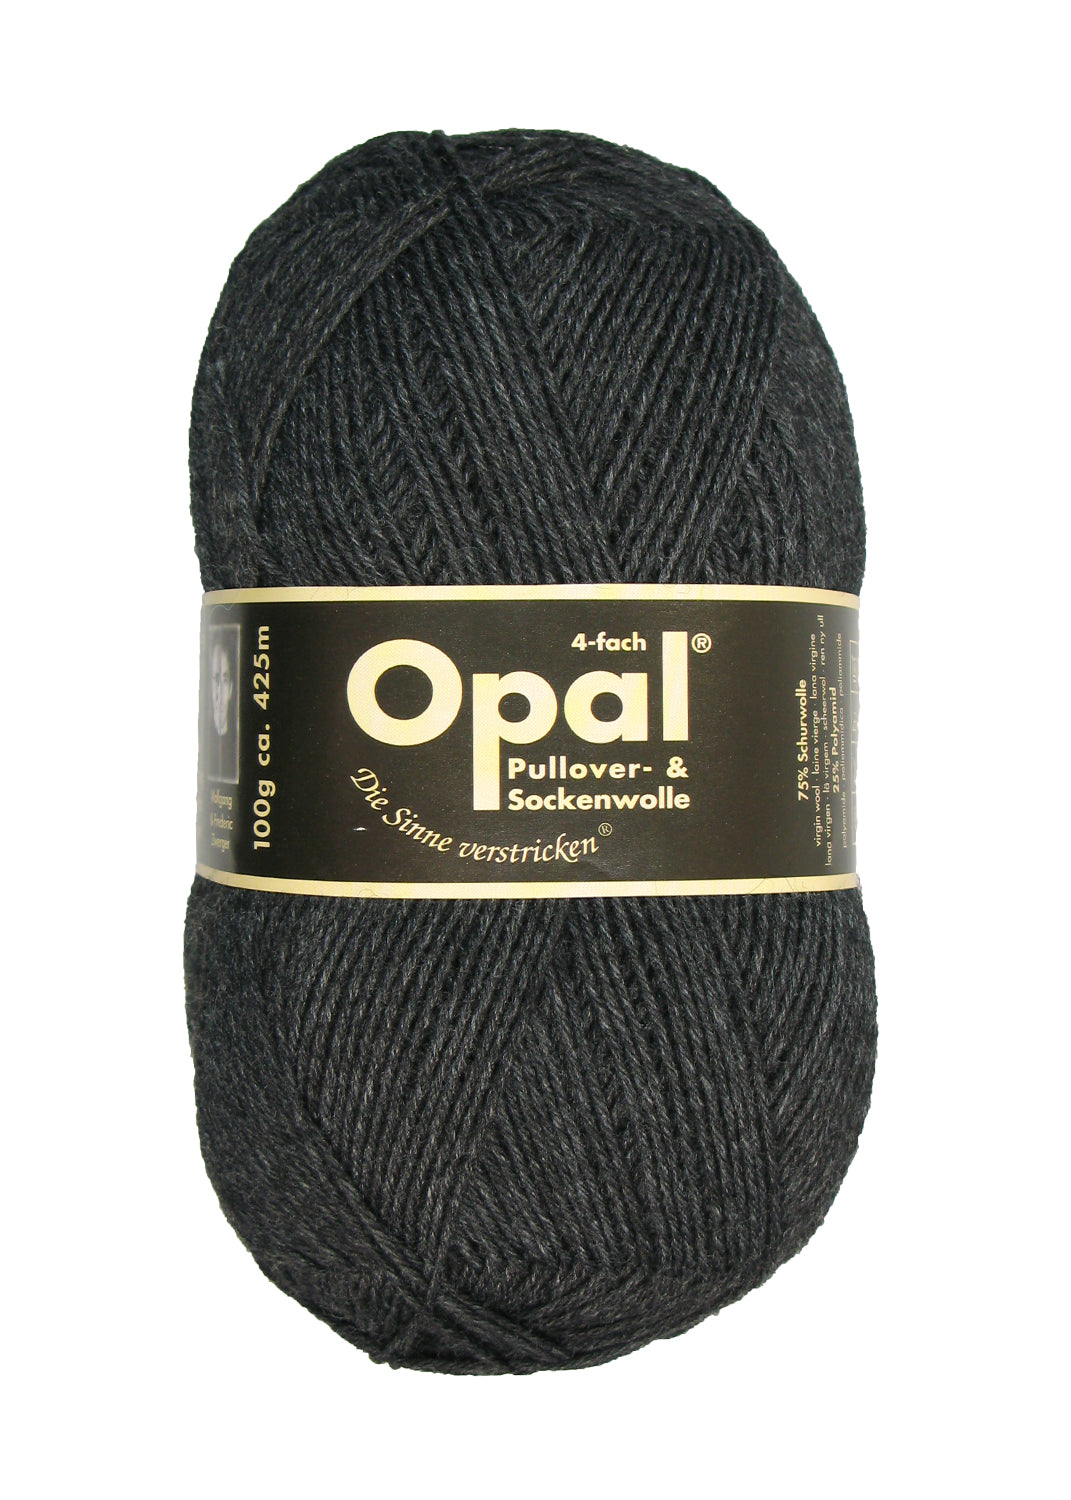 Opal enfärgat garn – OPAL19.se